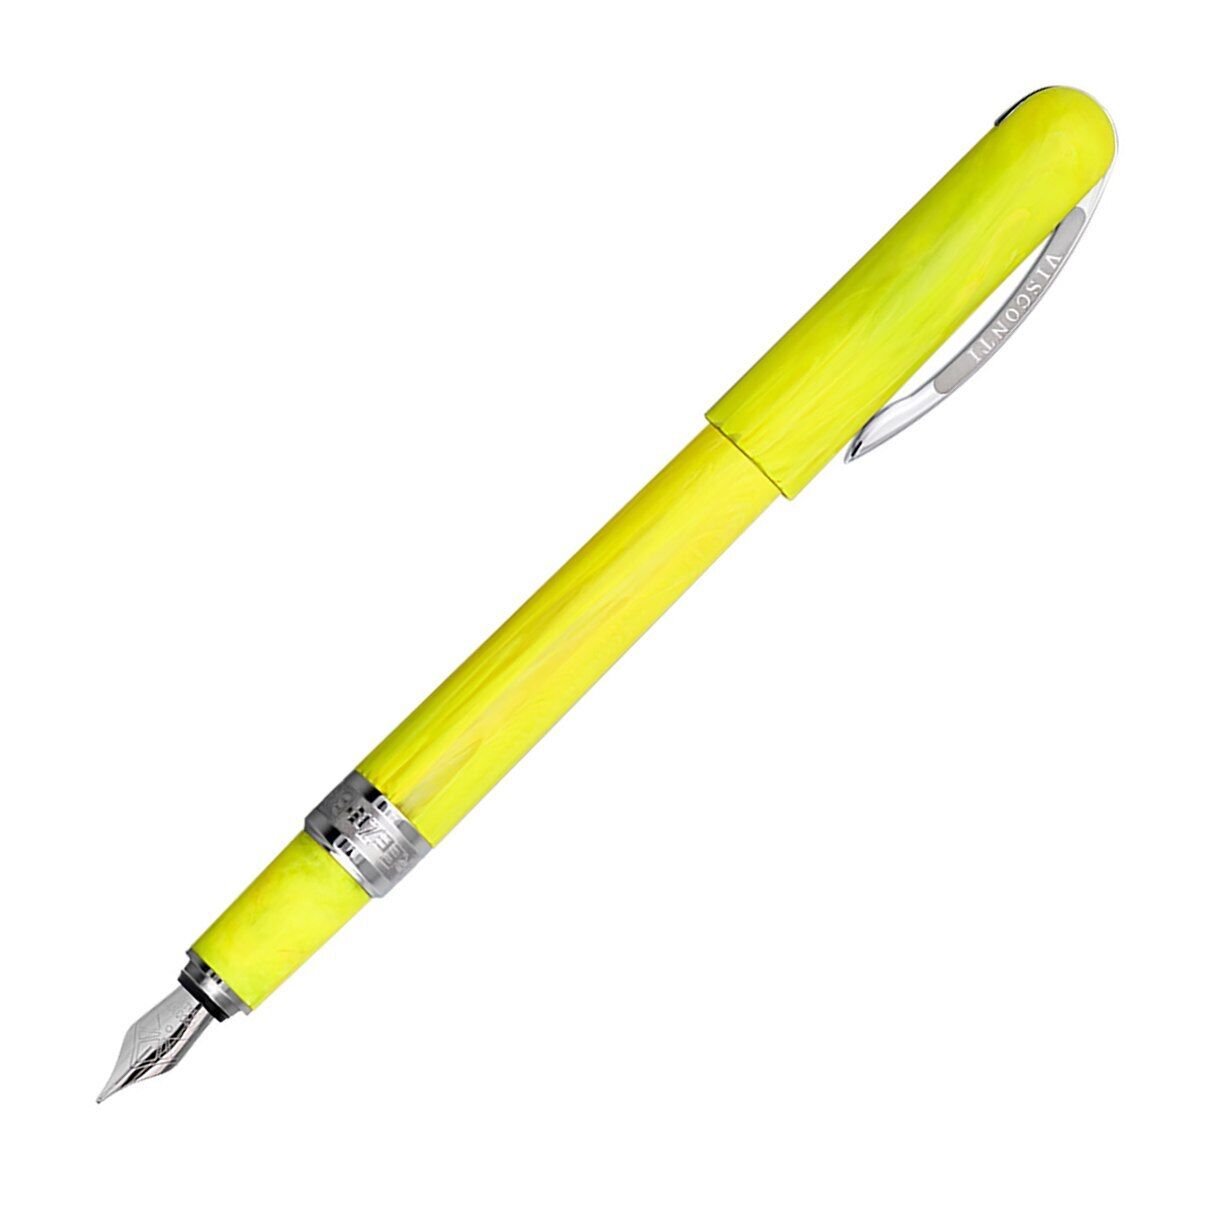 Visconti Breeze Fountain Pen, Lemon Yellow, New In Box, Medium